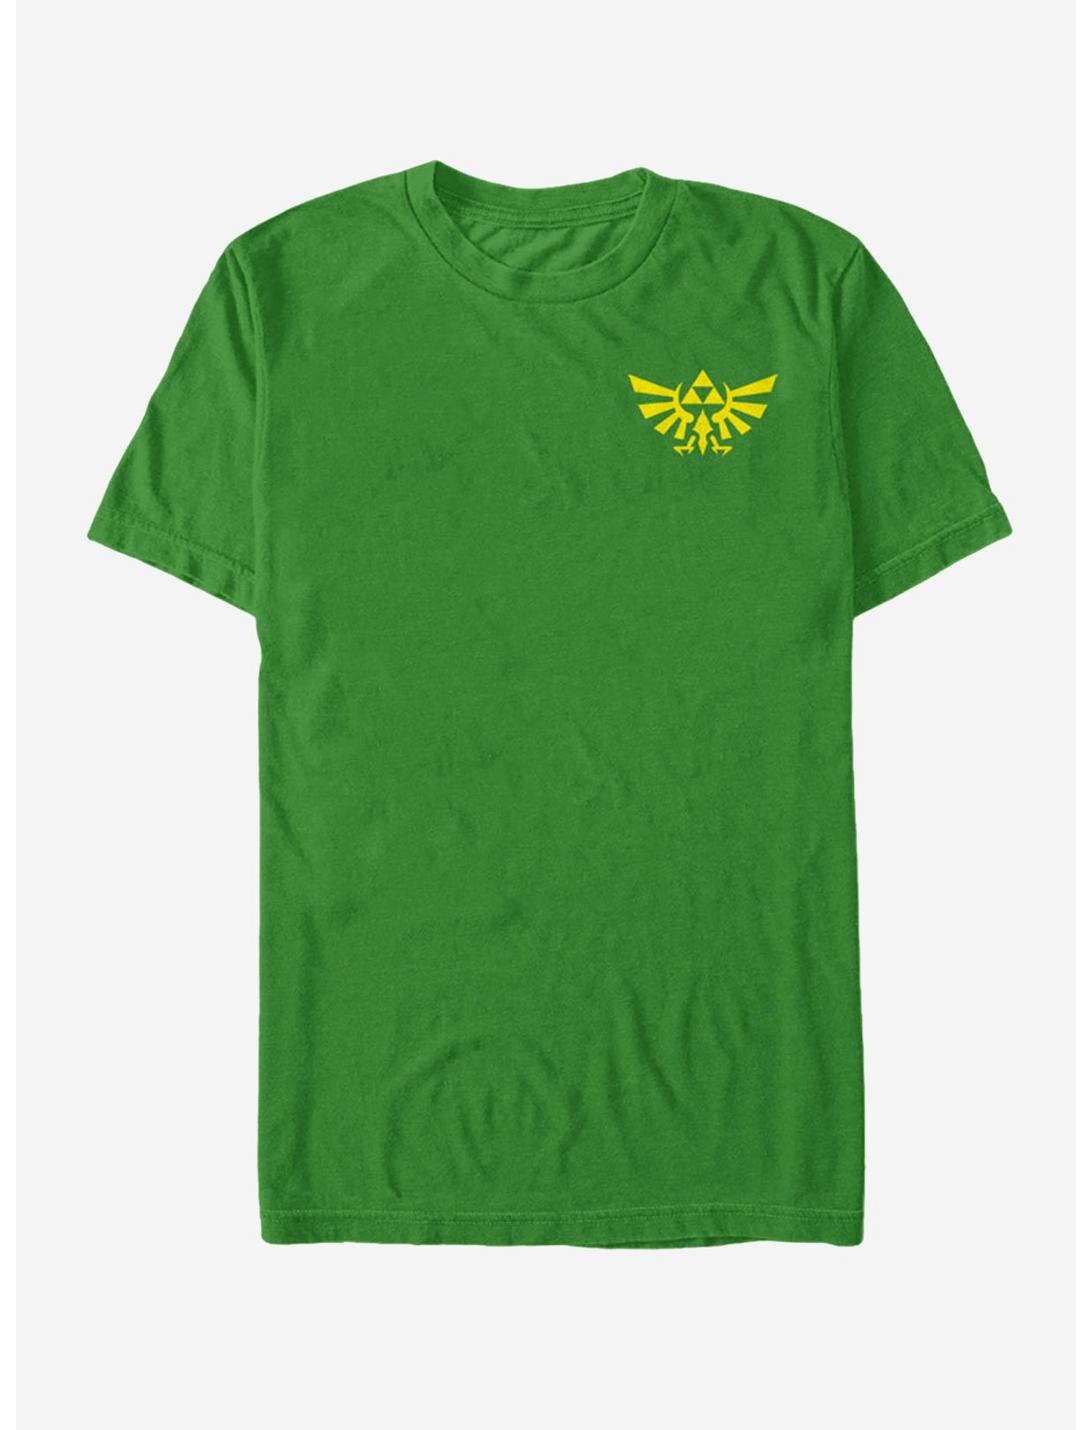 Nintendo Legend of Zelda Mini Triforce T-Shirt, KELLY, hi-res